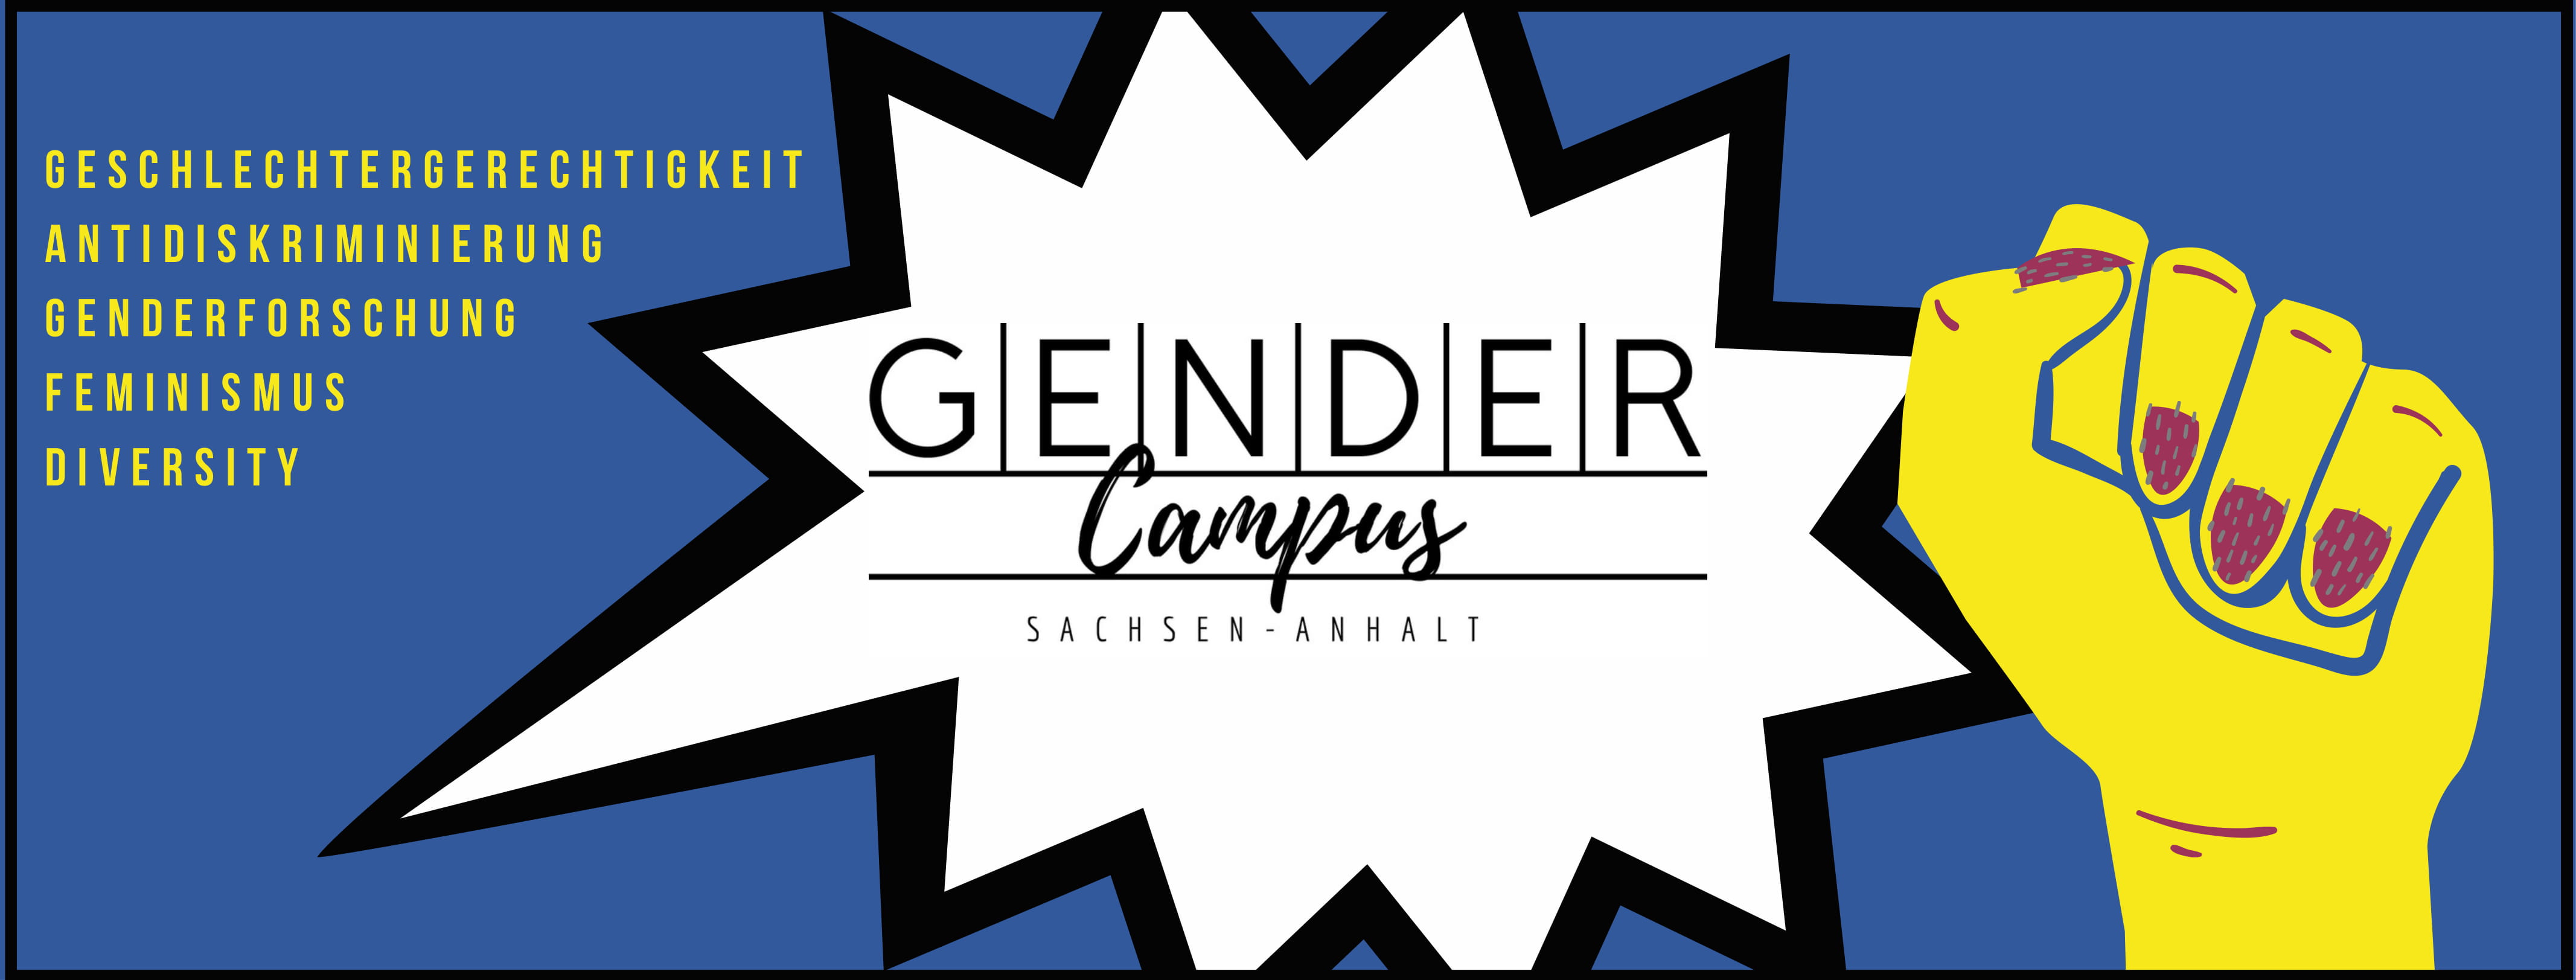 Gendercampus_Sachsen-Anhalt_neu